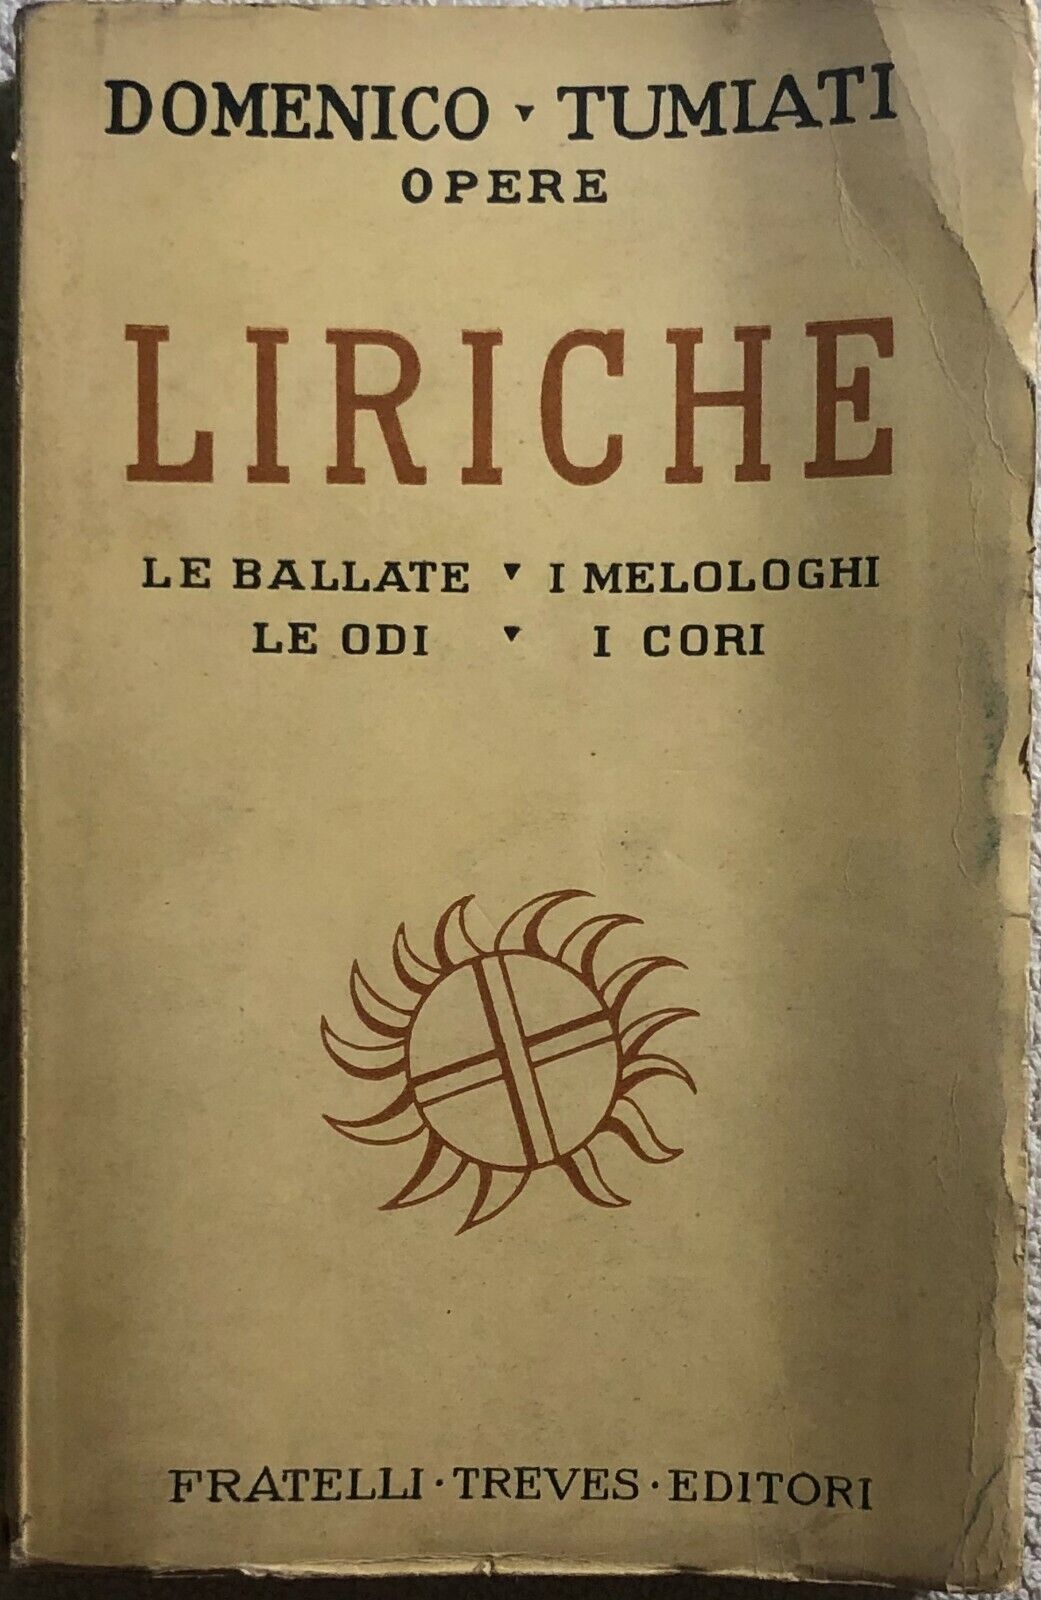 Liriche di Domenico Tumiati,  1937,  Fratelli Treves Editori Milano